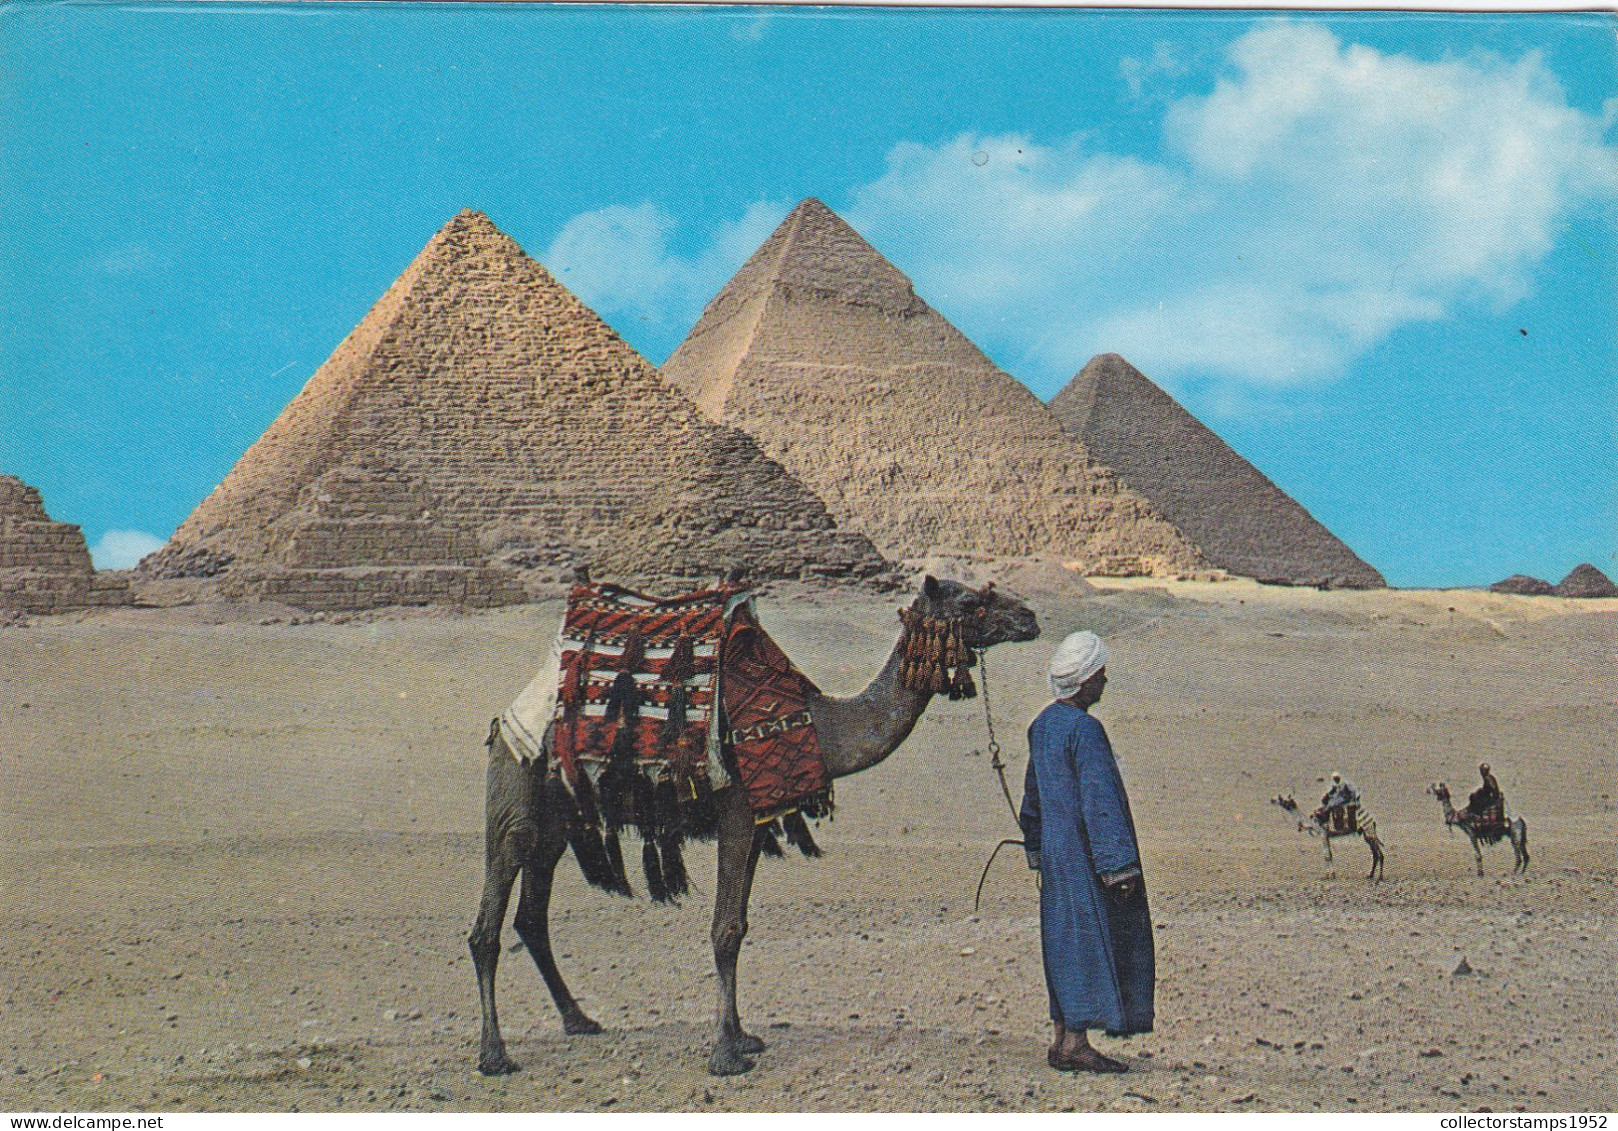 GIZA, GIZEH, PYRAMIDS, CAMELS, EGYPT, POSTCARD - Gizeh